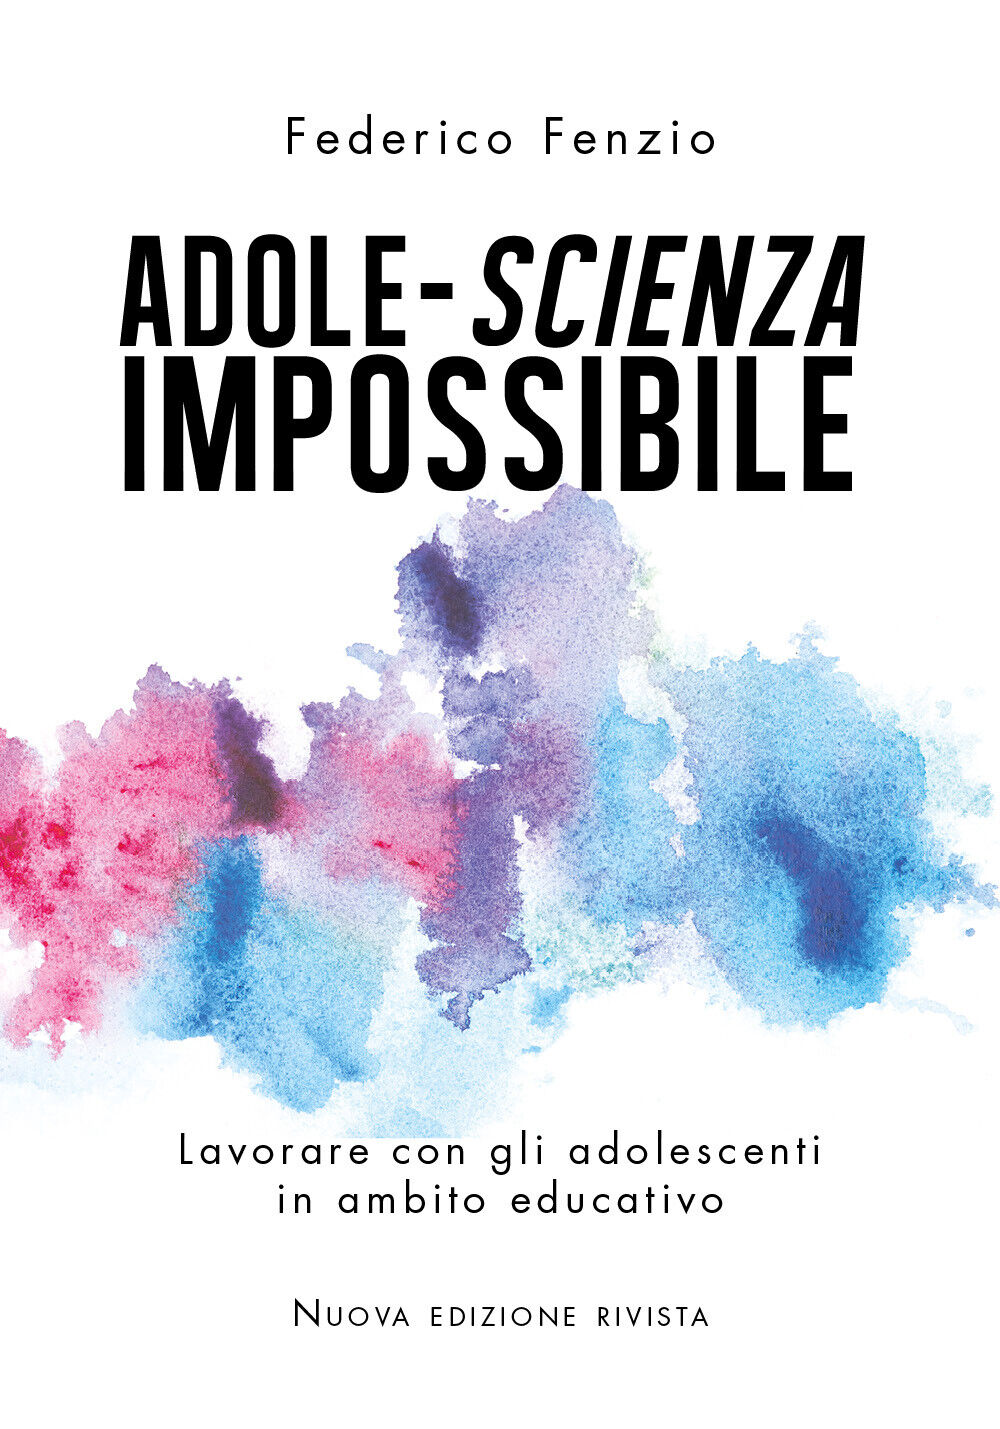 Adole-scienza impossibile -Federico Fenzio,  2020,  Youcanprint libro usato